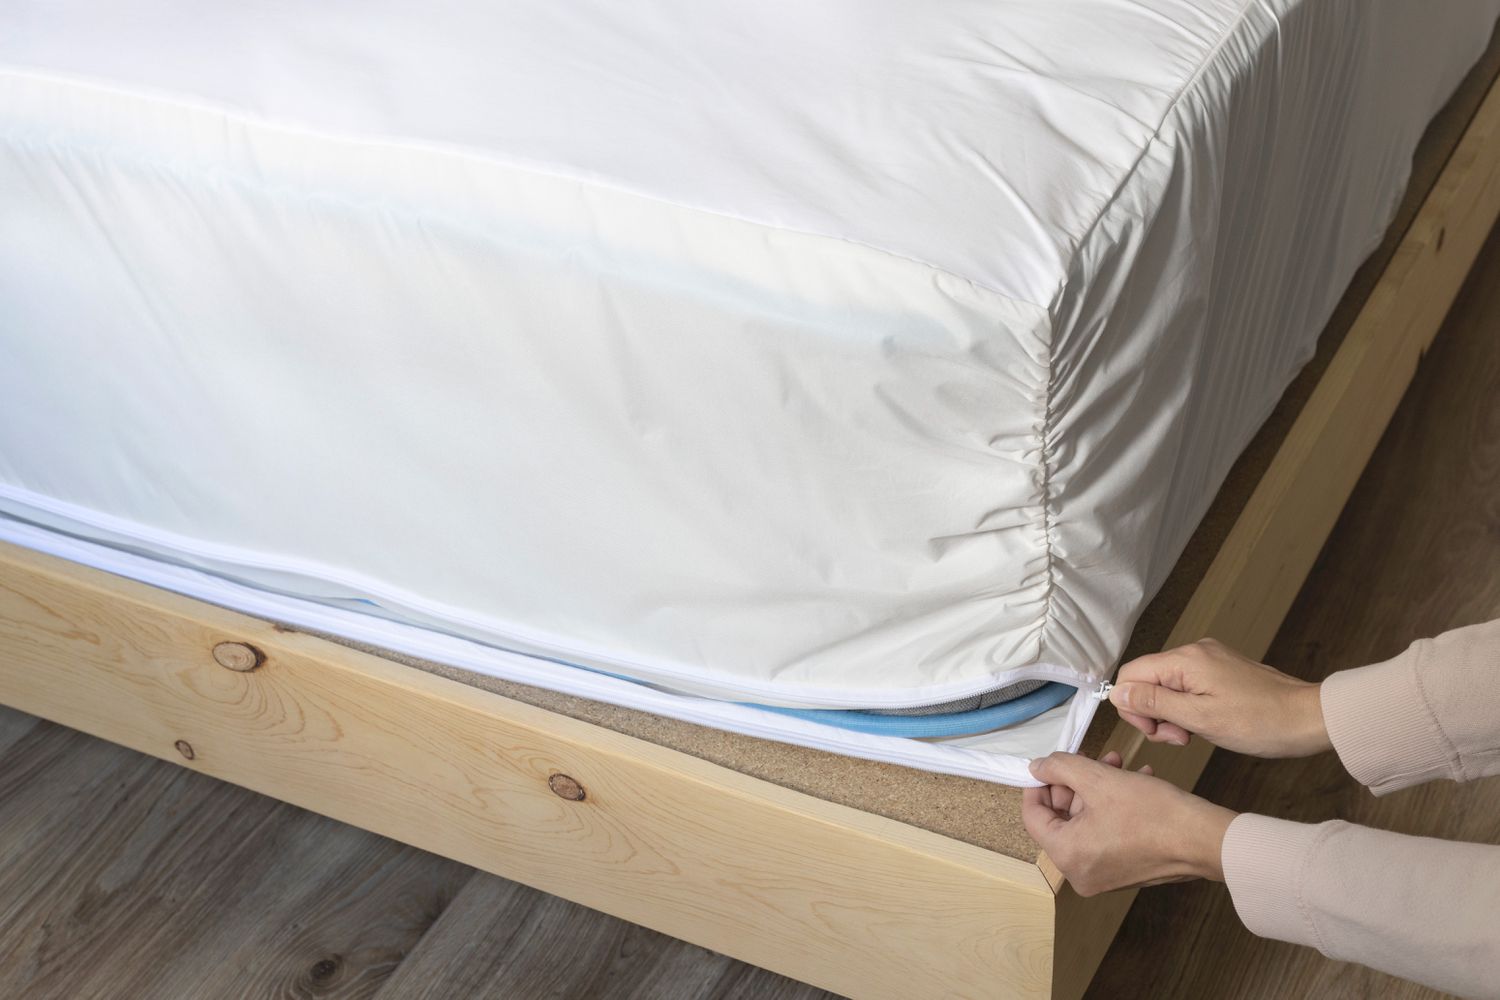 Schutzhülle um die gereinigte Matratze gewickelt, um Hausstaubmilben zu verhindern